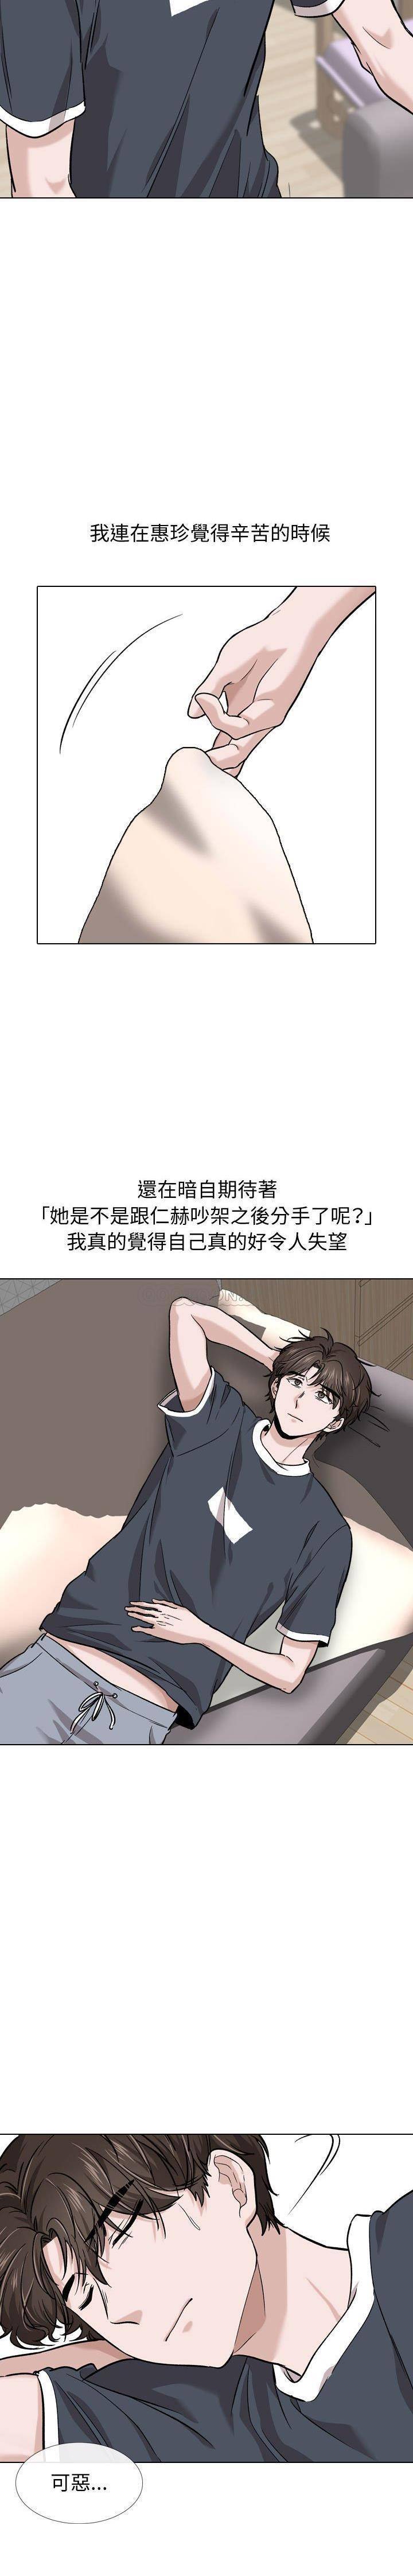 韩国污漫画 不單純友情 第15话 4